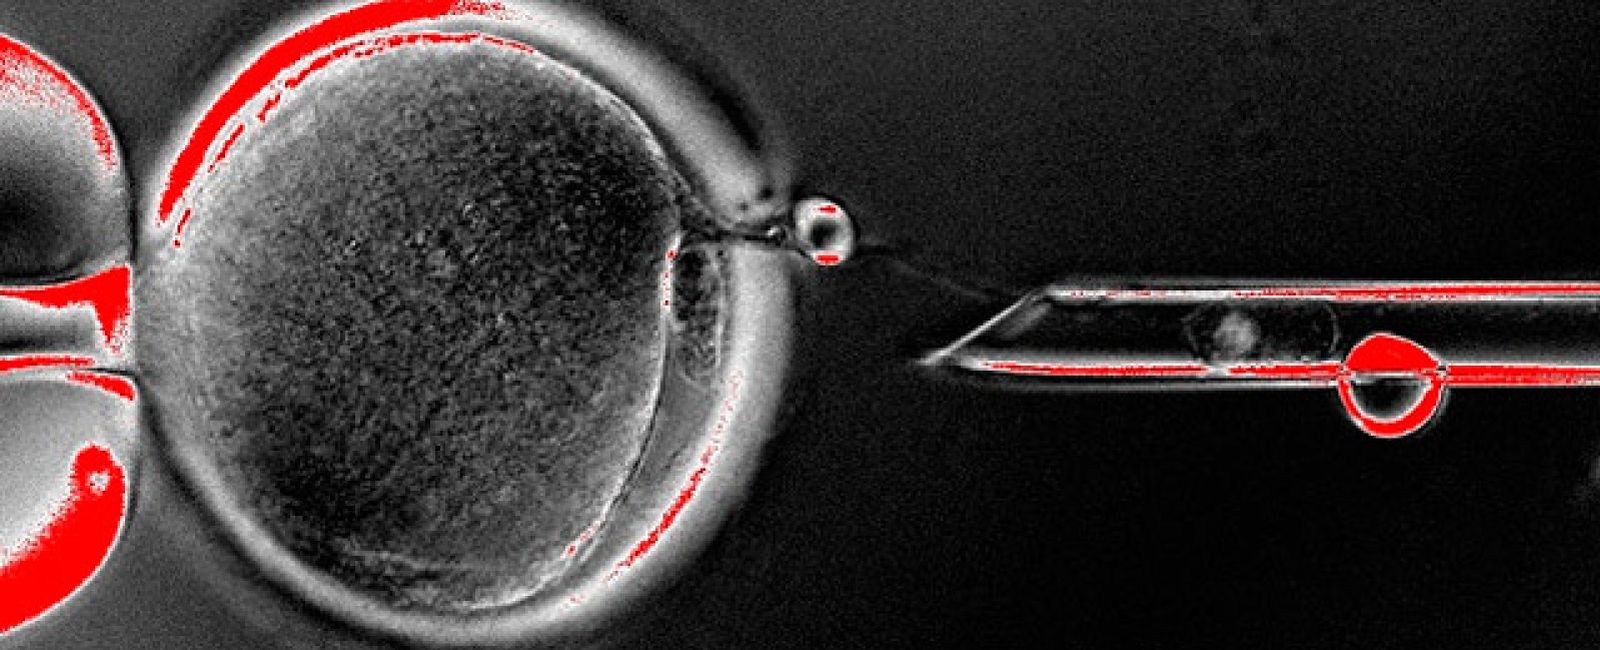 Foto: Avance histórico: la ciencia consigue  células embrionarias humanas mediante clonación